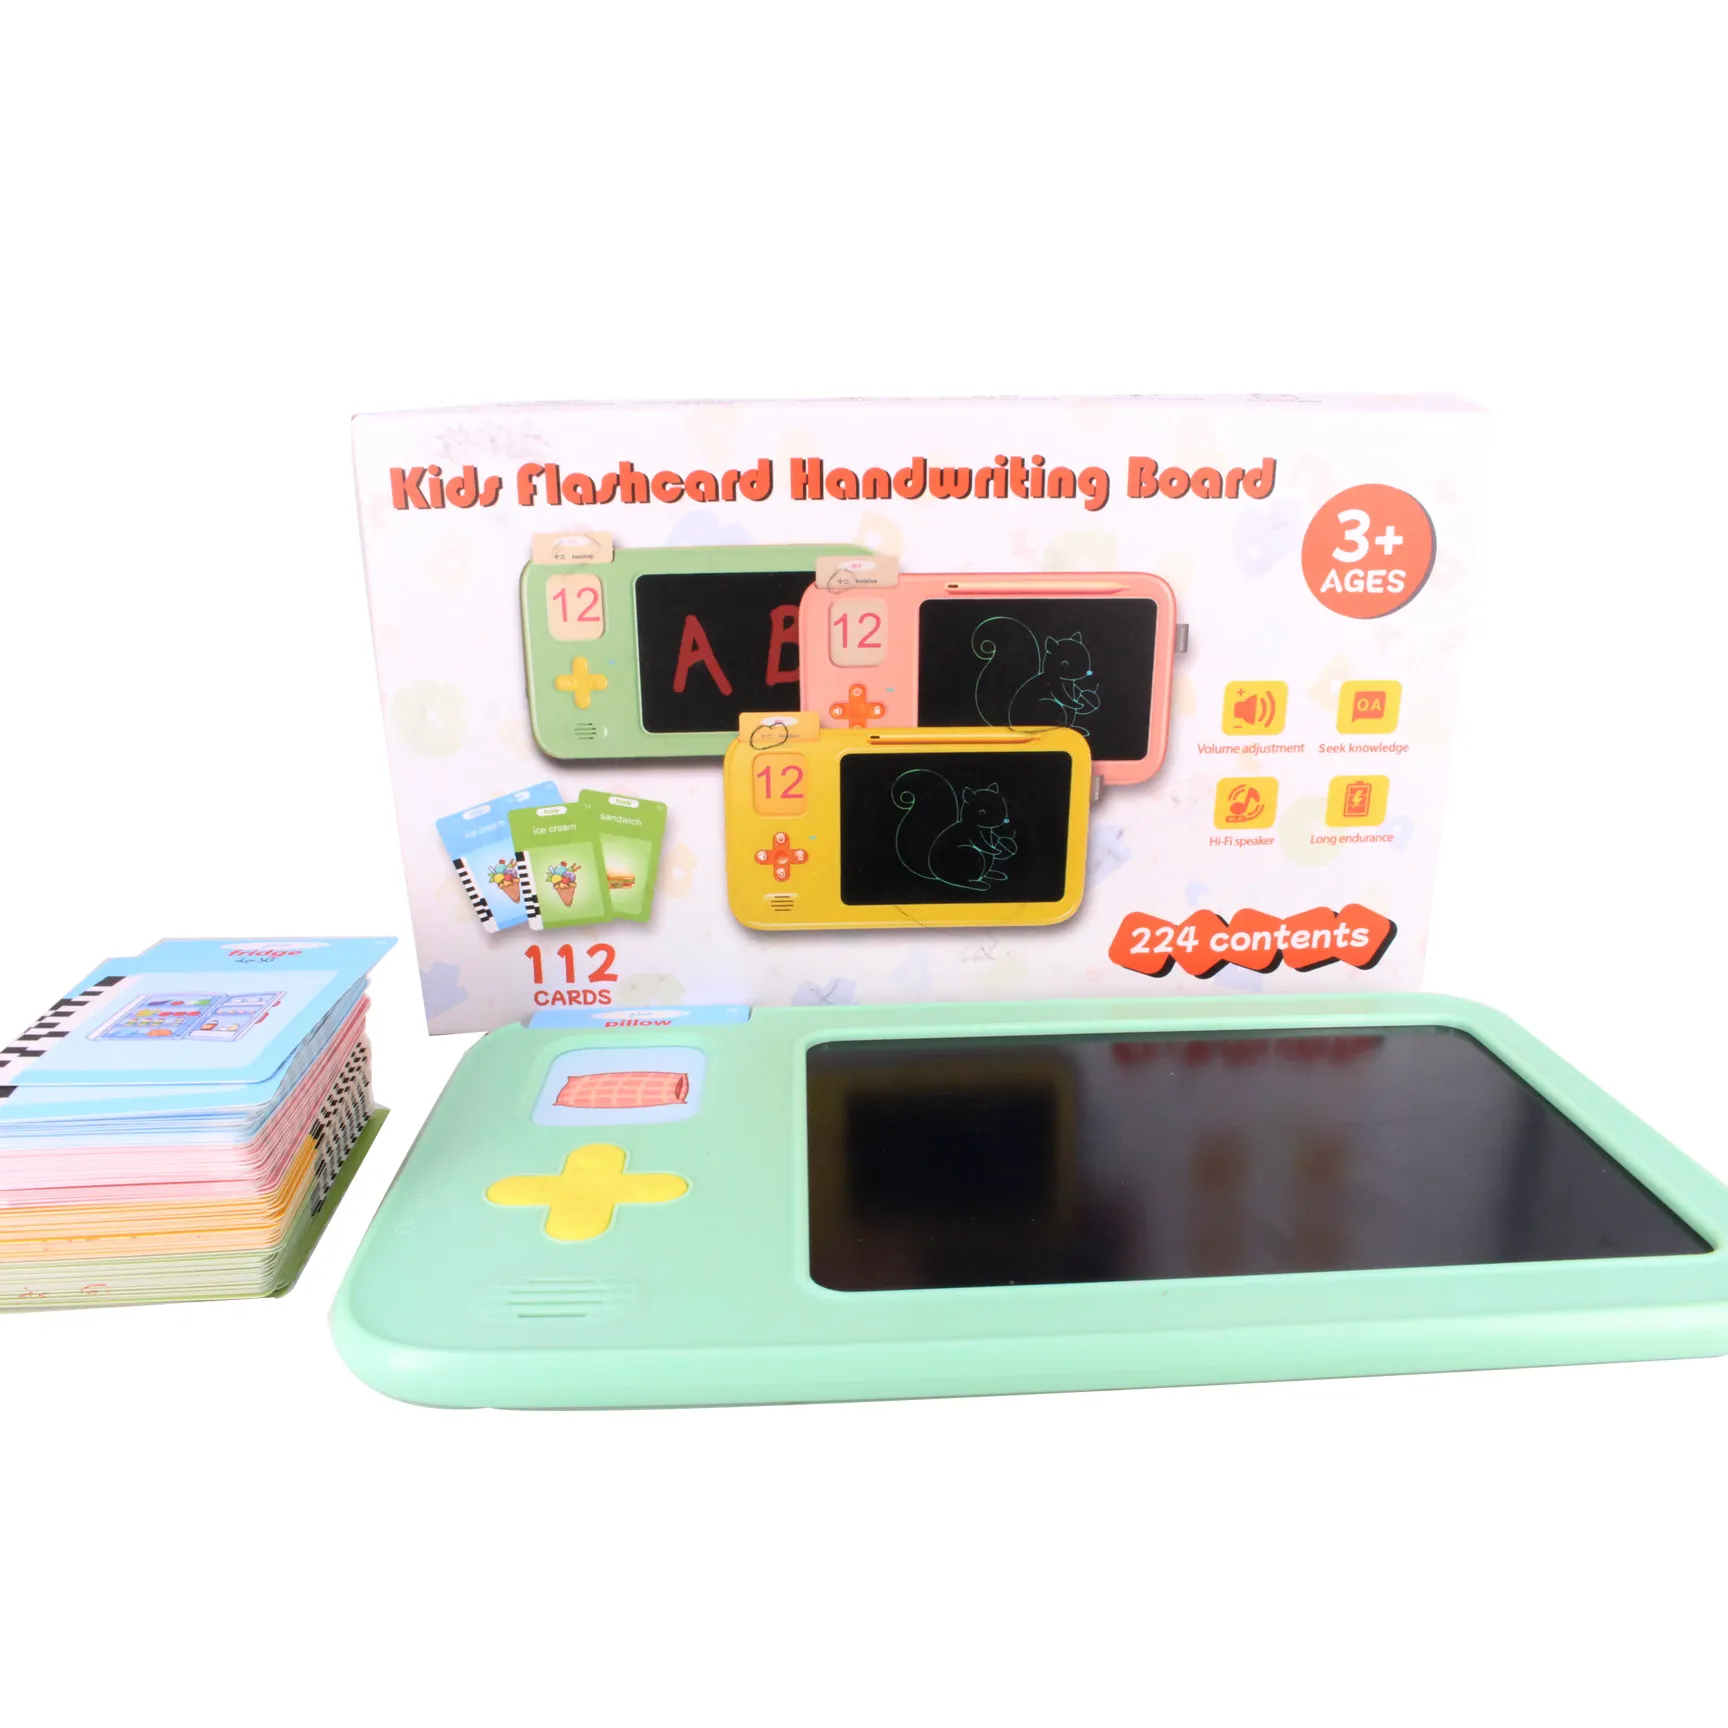 Máquina de tarjetas Flash, nuevo juguete parlante multilingüe con 112 y 224 miras, dispositivo de aprendizaje educativo para niños